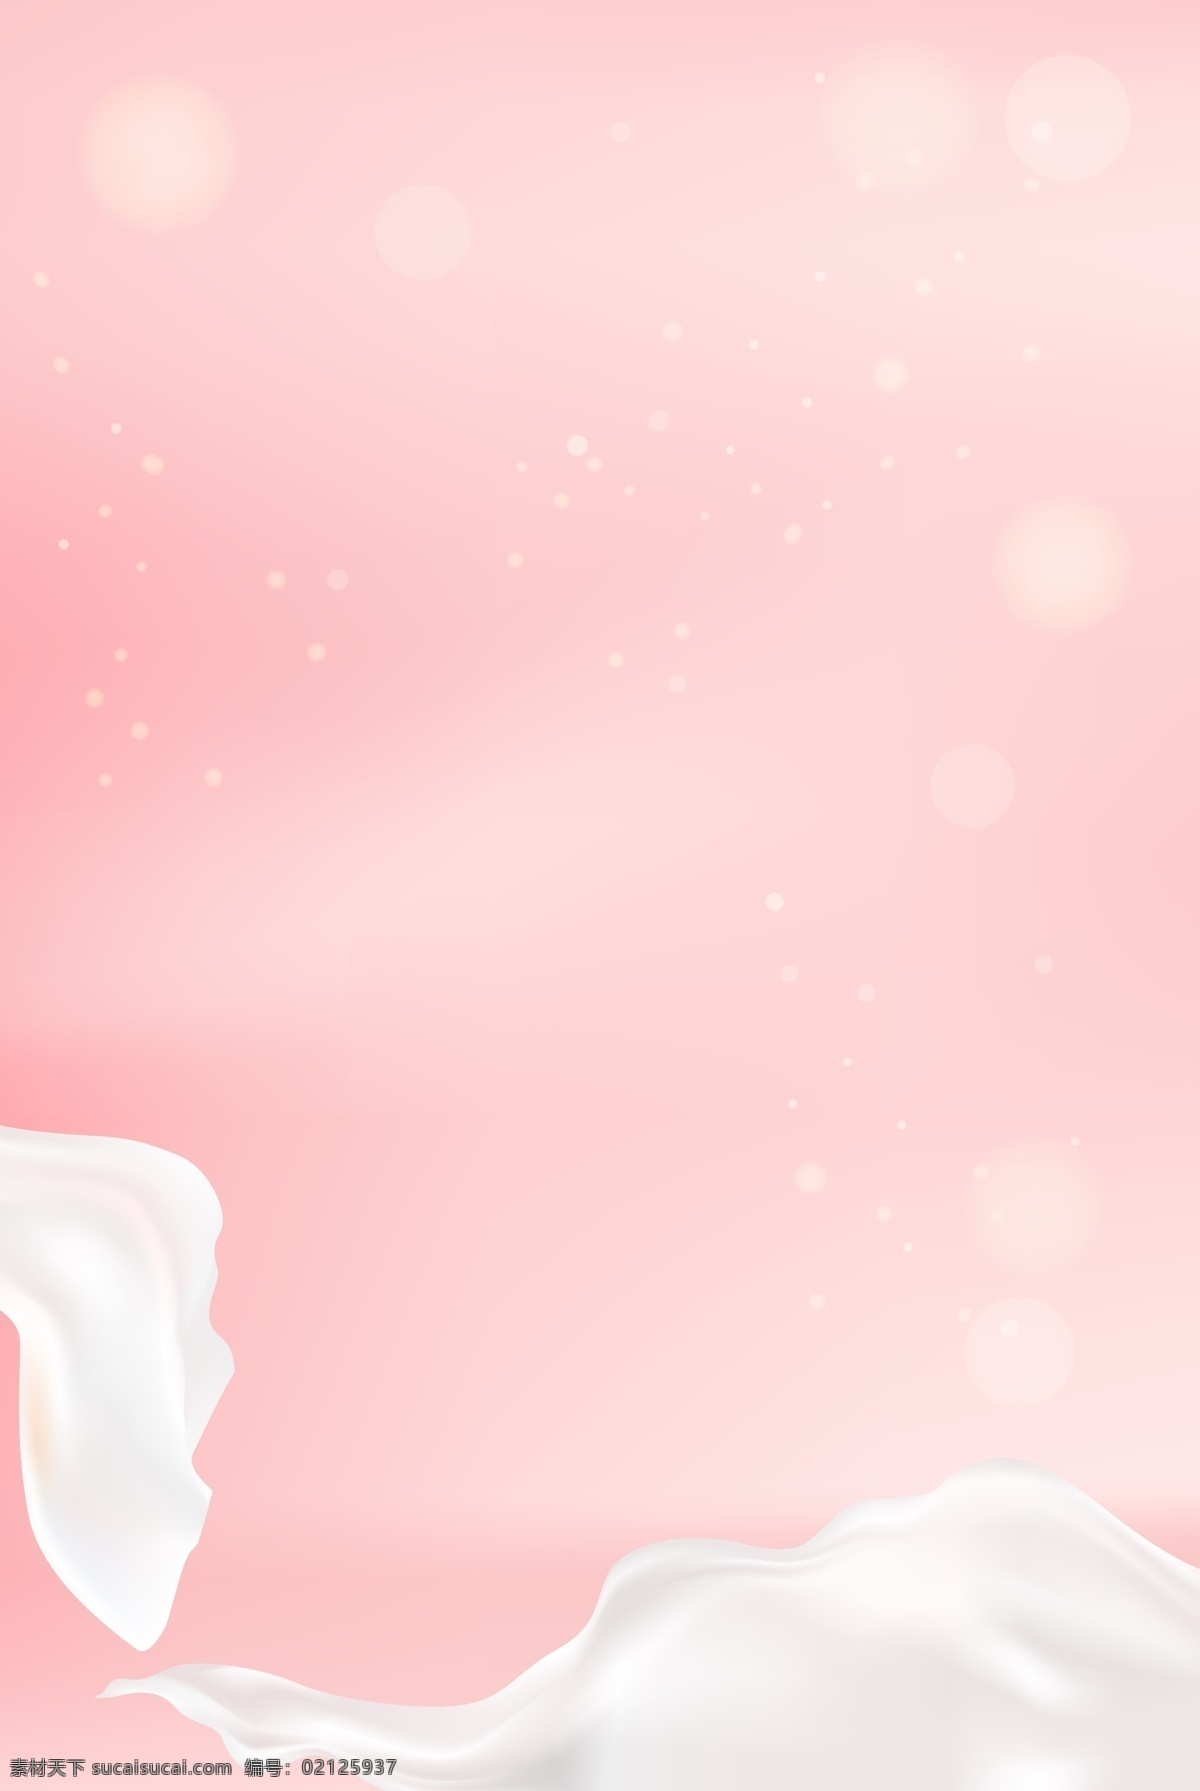 粉色 浪漫 清新 护肤品 广告 背景 美容 护肤 化妆品 海报背景